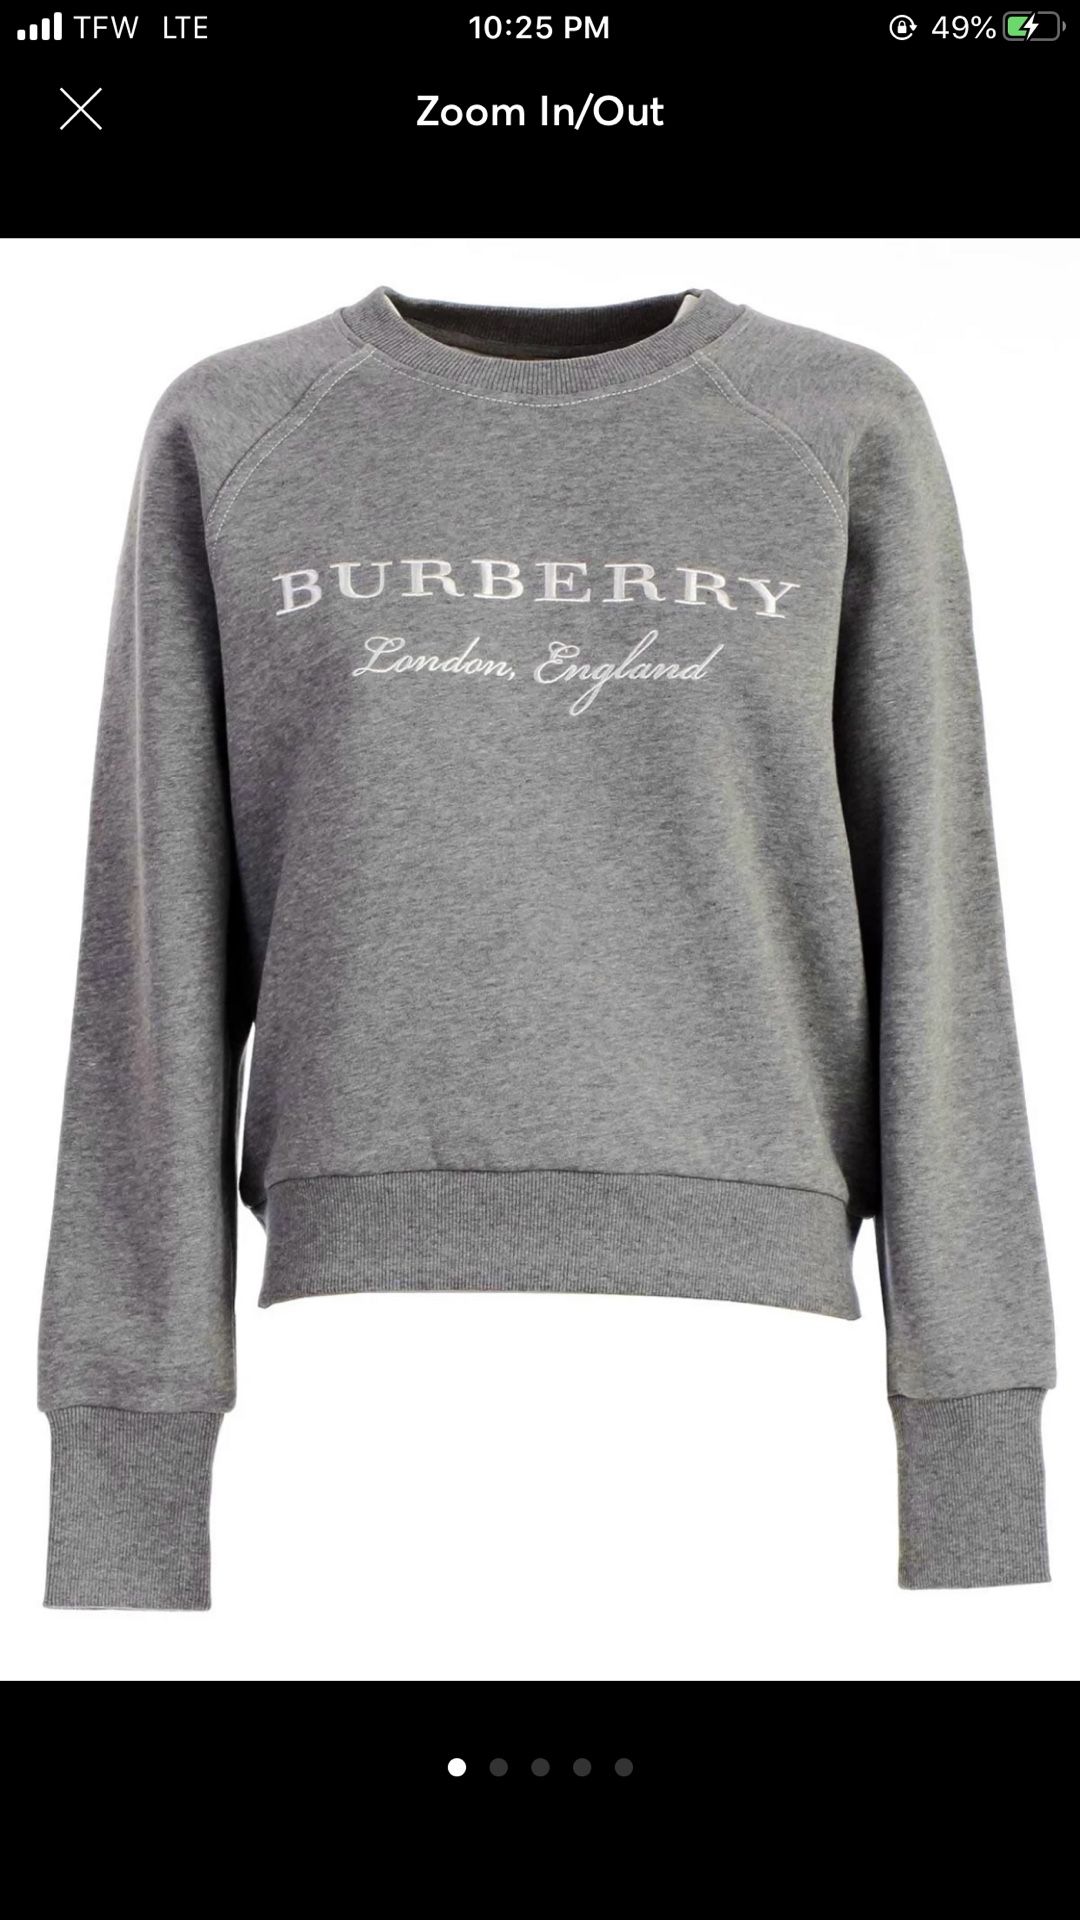 Burberry crew neck women’s sweatshirt